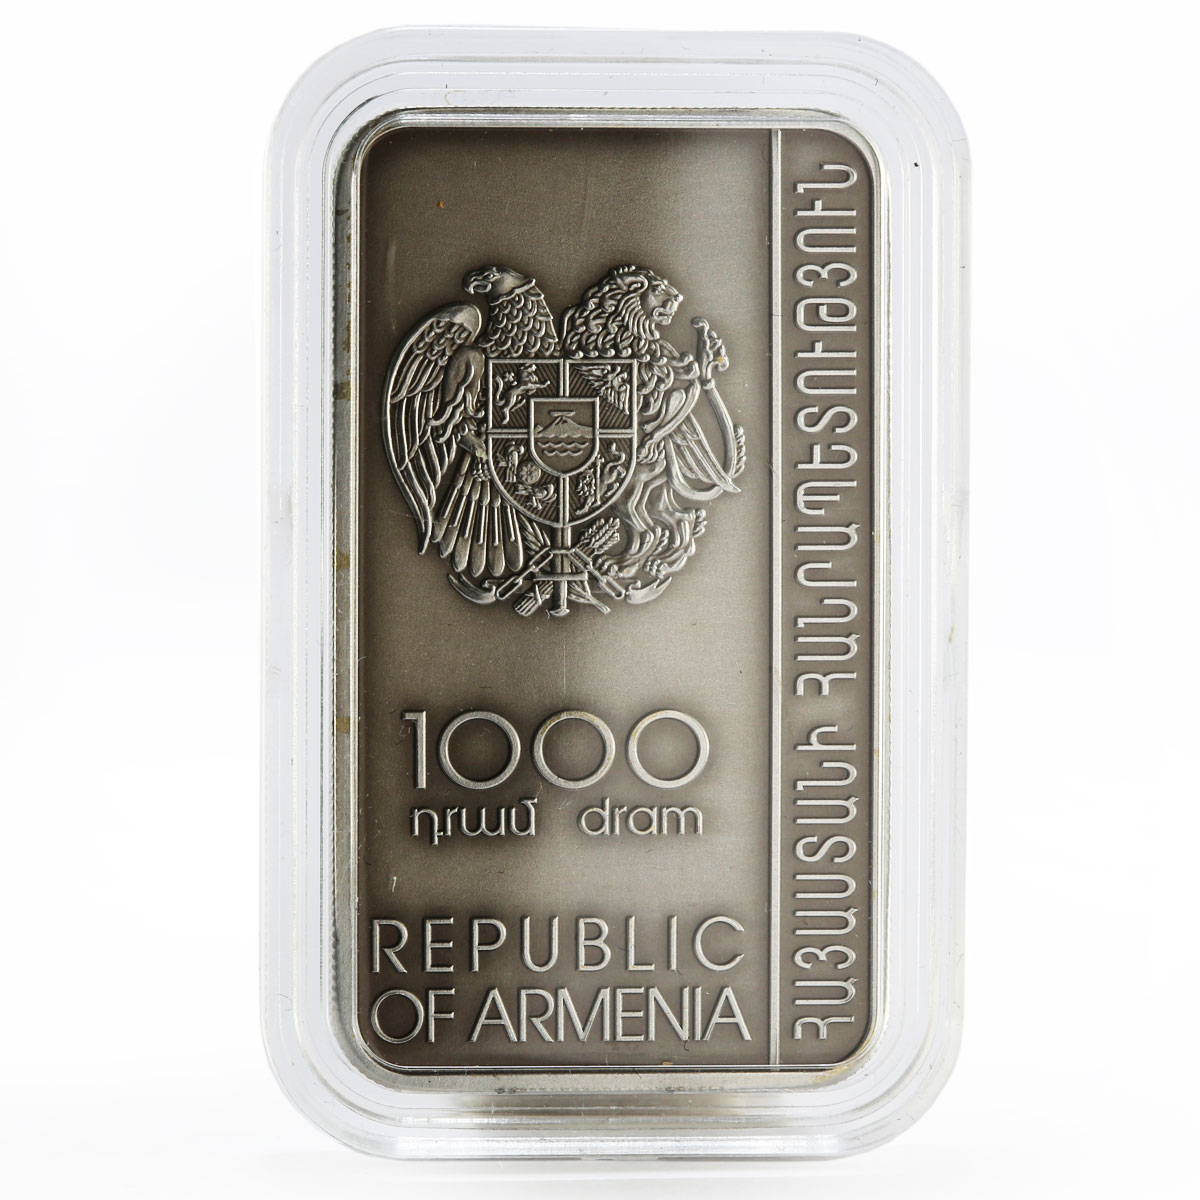 Armenia 1000 dram Noravank Monastery Khachkar Monastery rood silver coin 2011